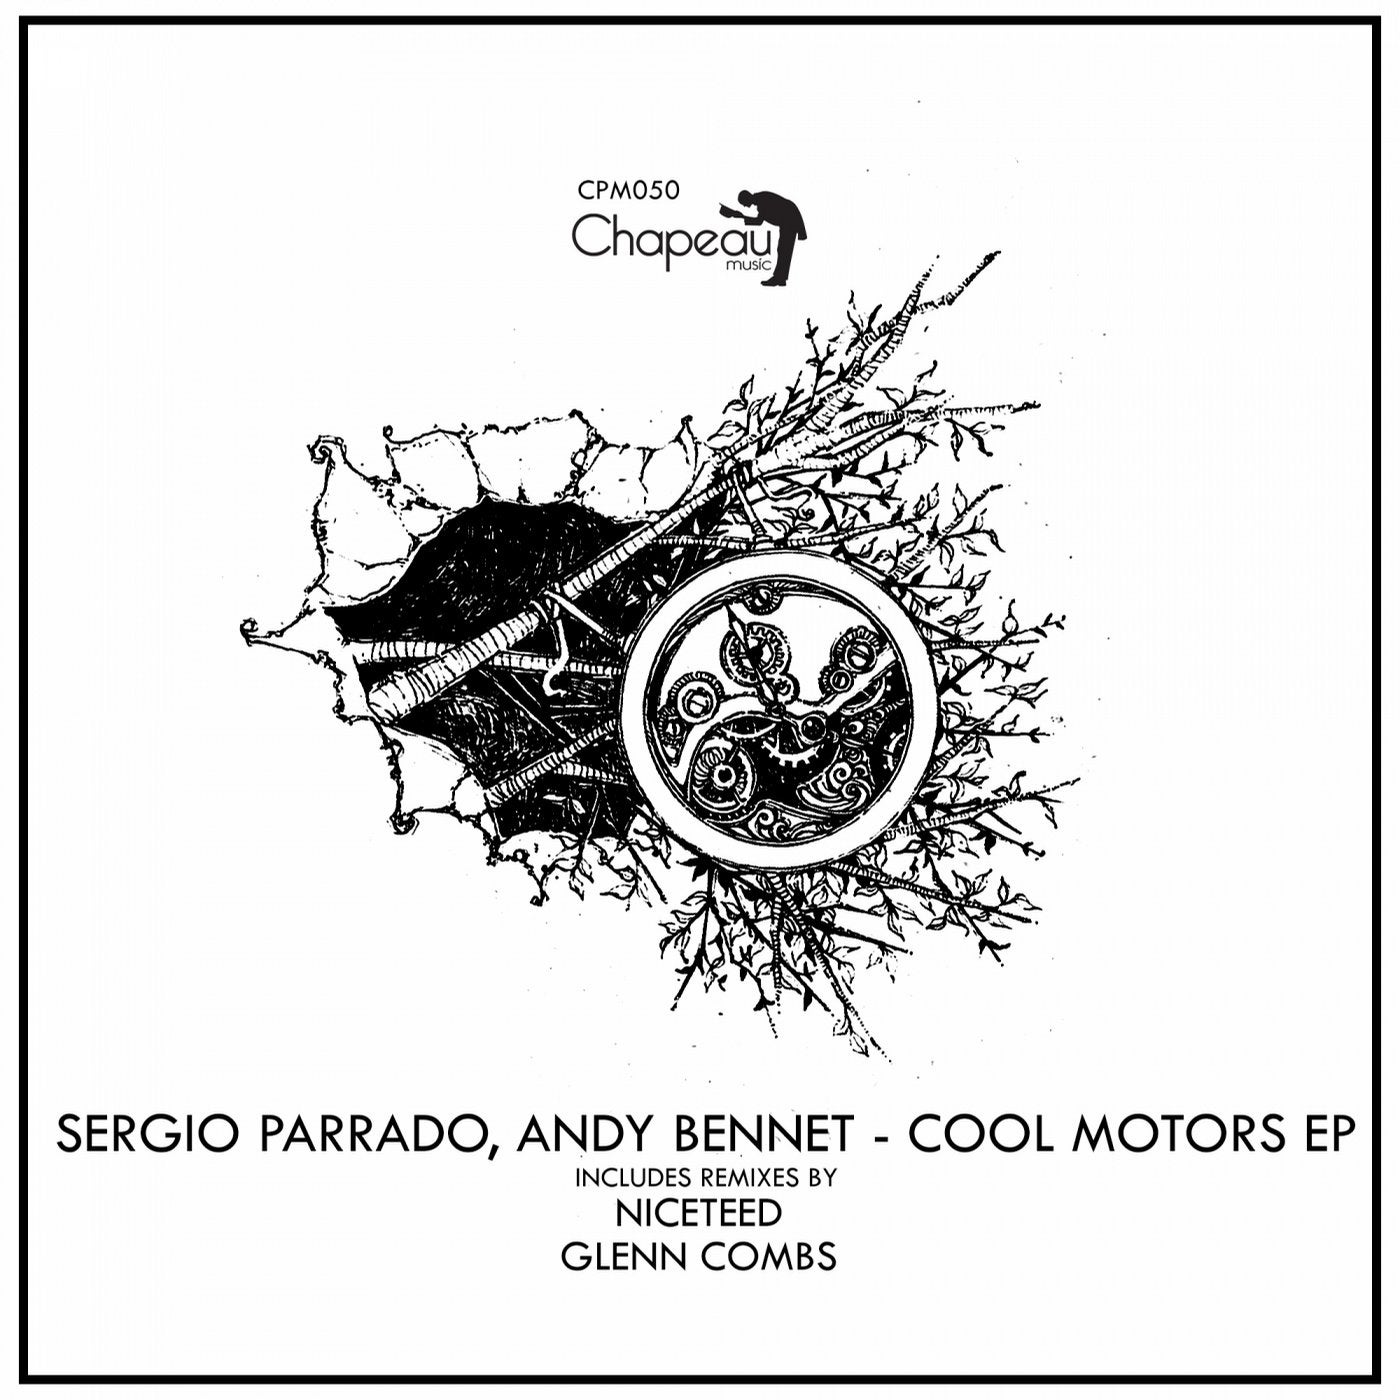 Cool Motors EP